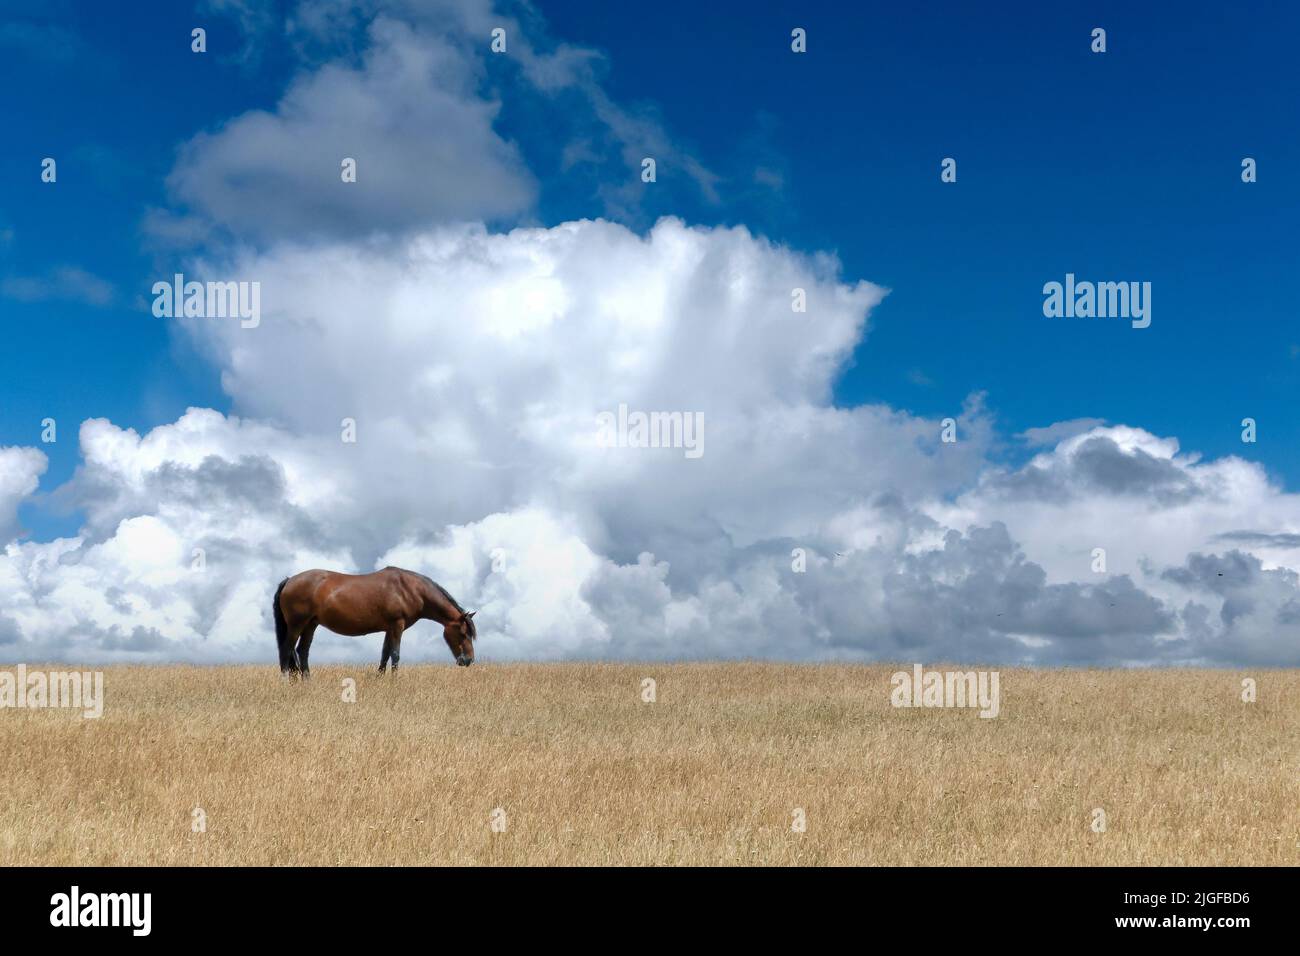 Dorset, Reino Unido. Un caballo de pura sangre solitario pastorea en un campo de hierba de color paja. El telón de fondo de la imagen es un cielo llamativo Foto de stock